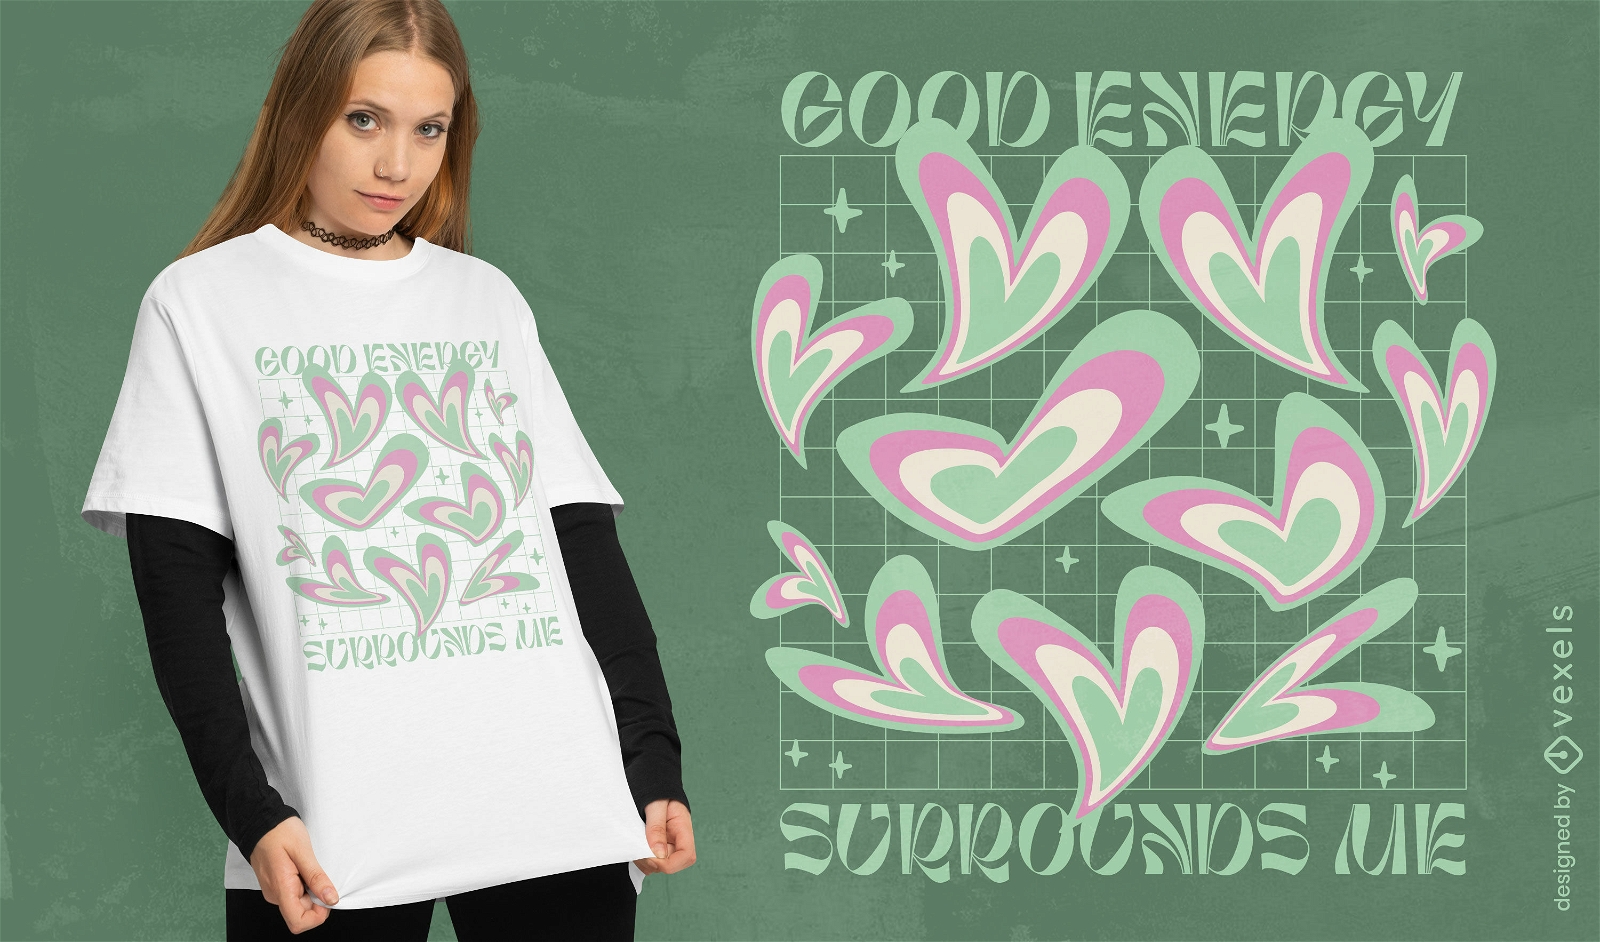 Gutes Energieherz-T-Shirt-Design